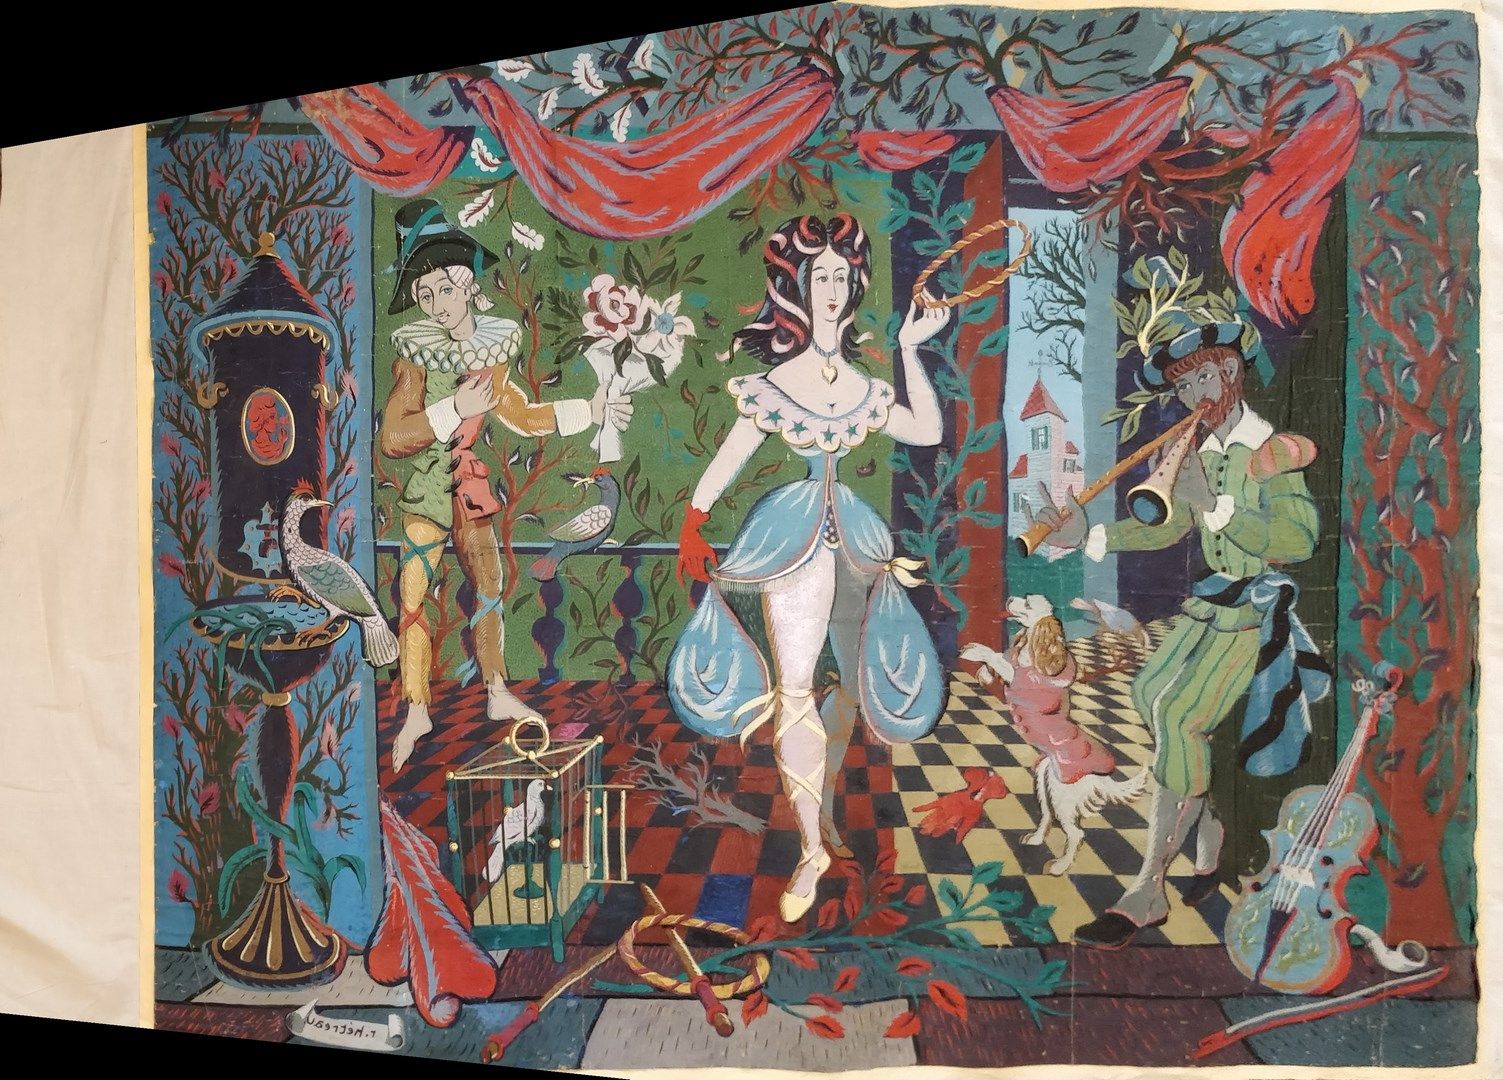 Null 埃特罗-雷米(1913-2001)

挂毯用纸盒

帆布板

缺乏，事故，裂缝

200 x 154 cm